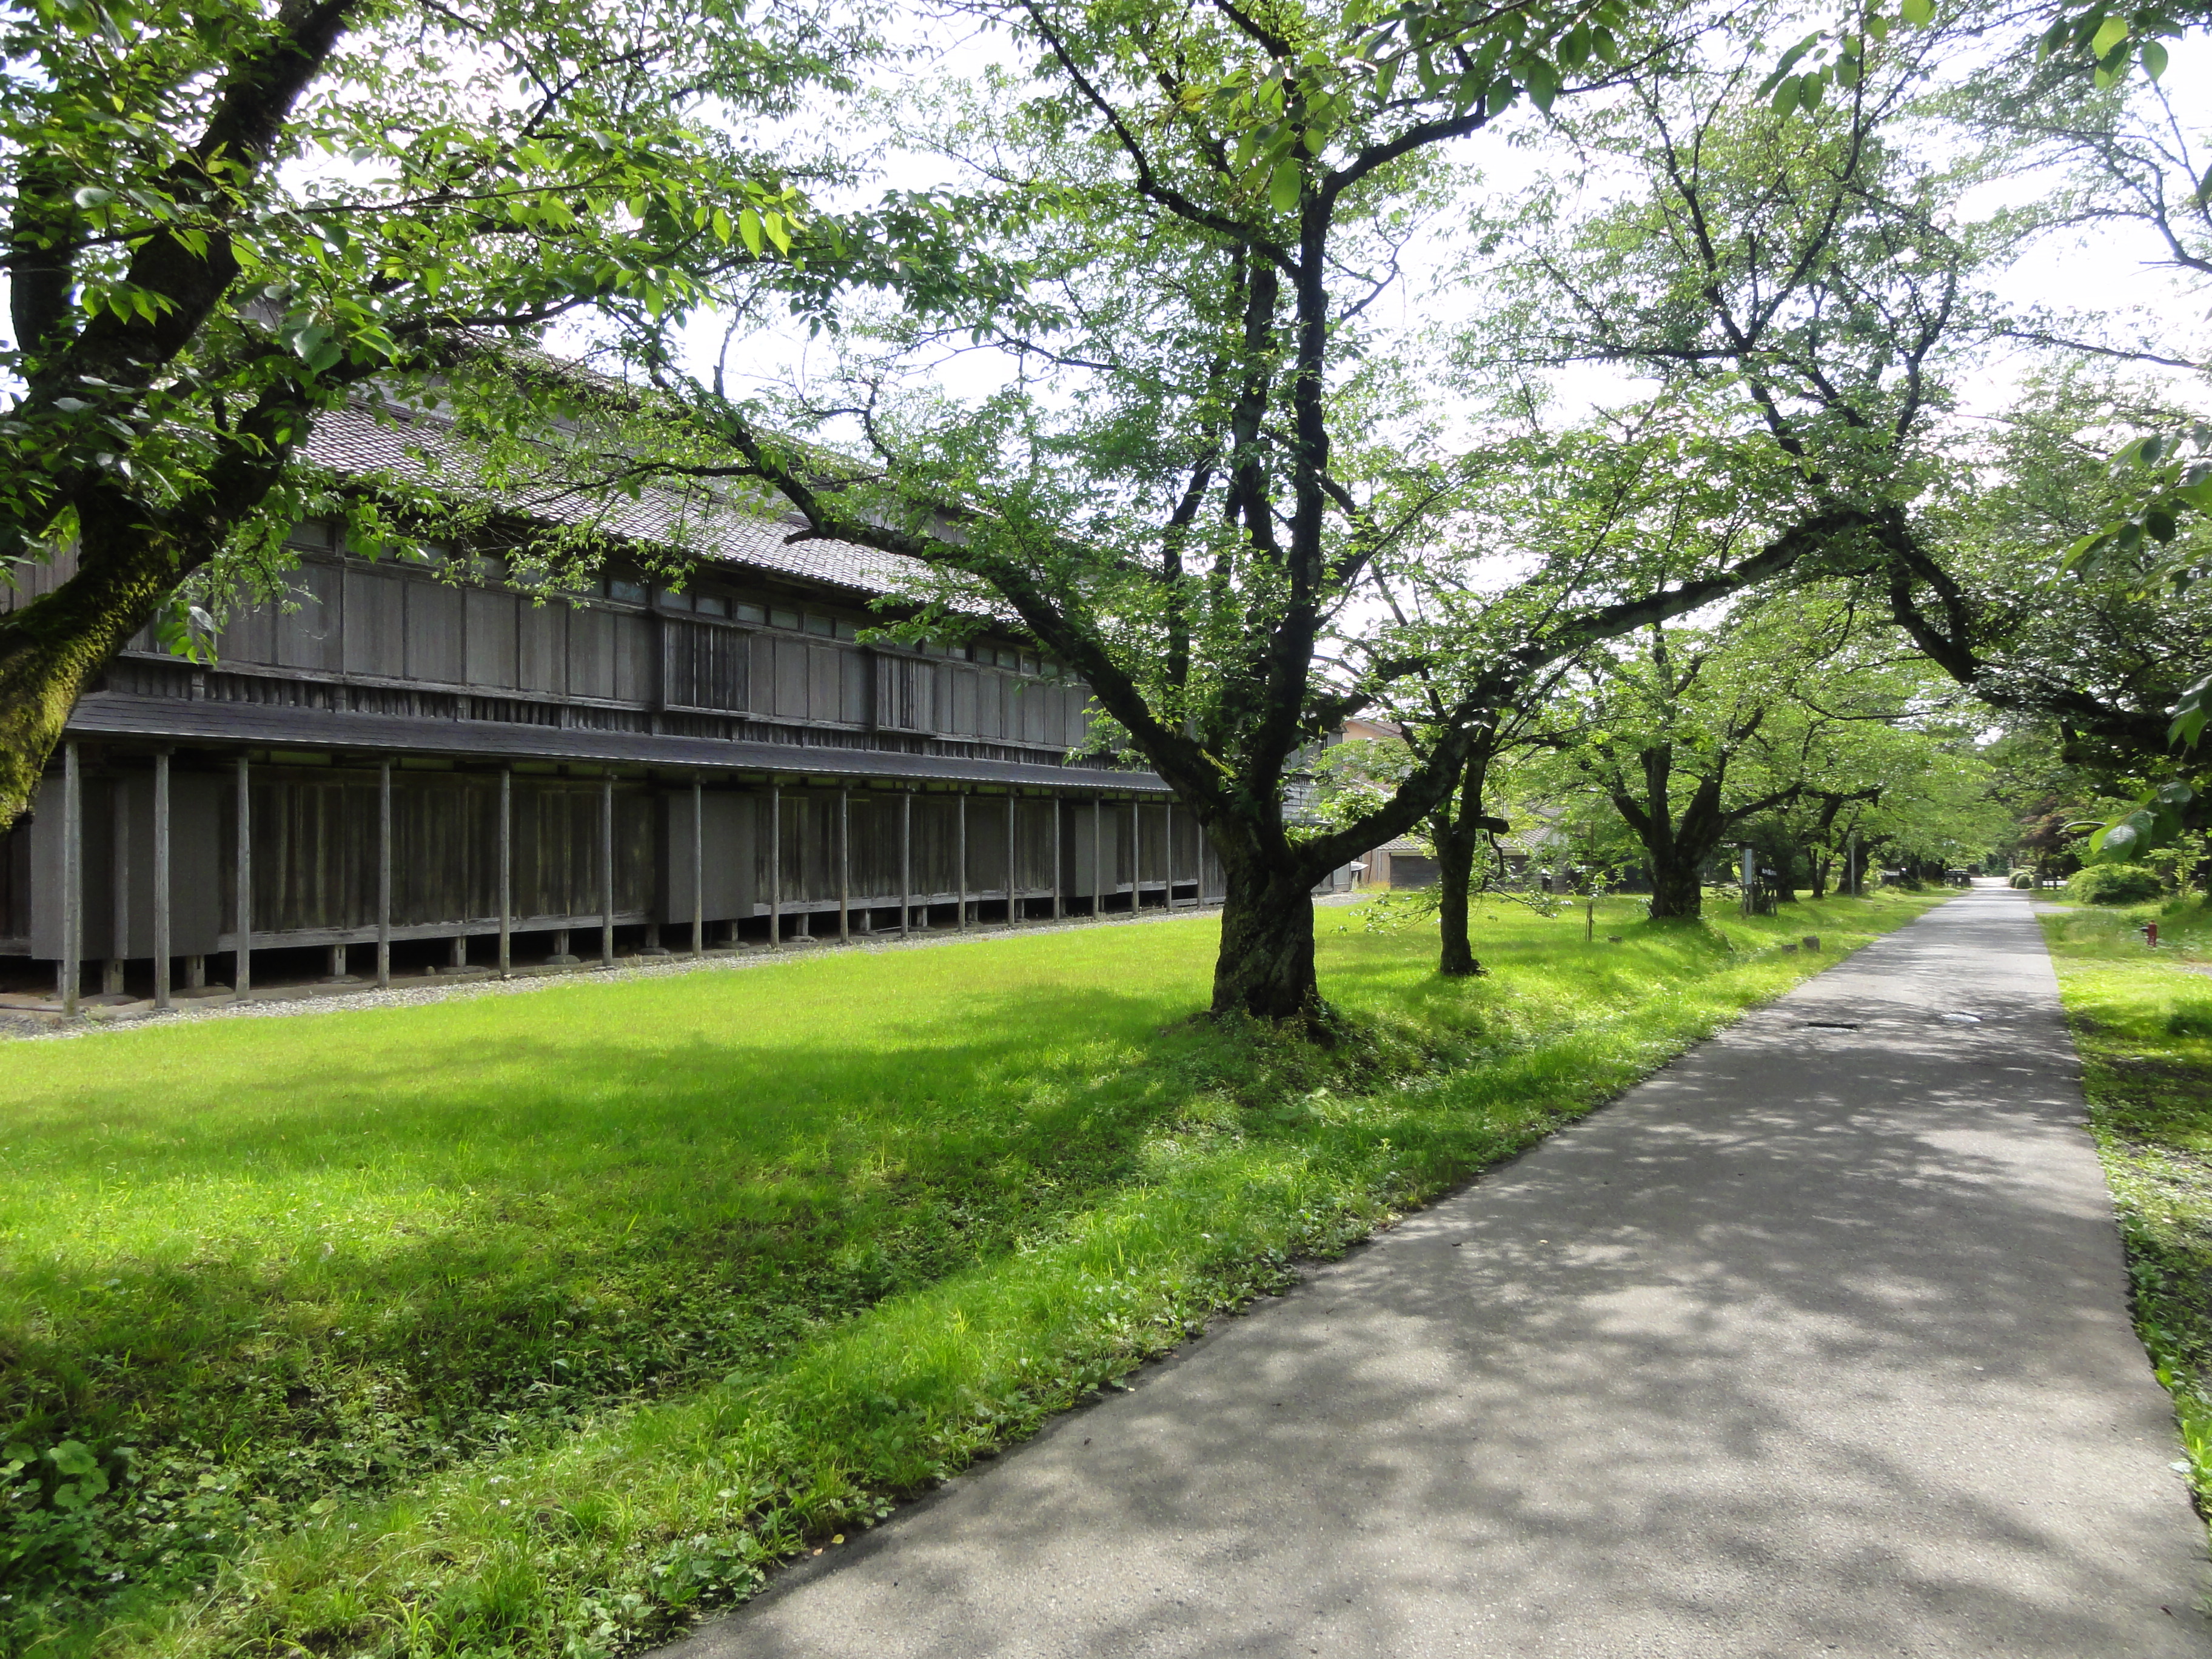 49日本最大の蚕室群「松ヶ岡開墾場」～庄内藩士の開拓精神とジャパン侍シルクの源流